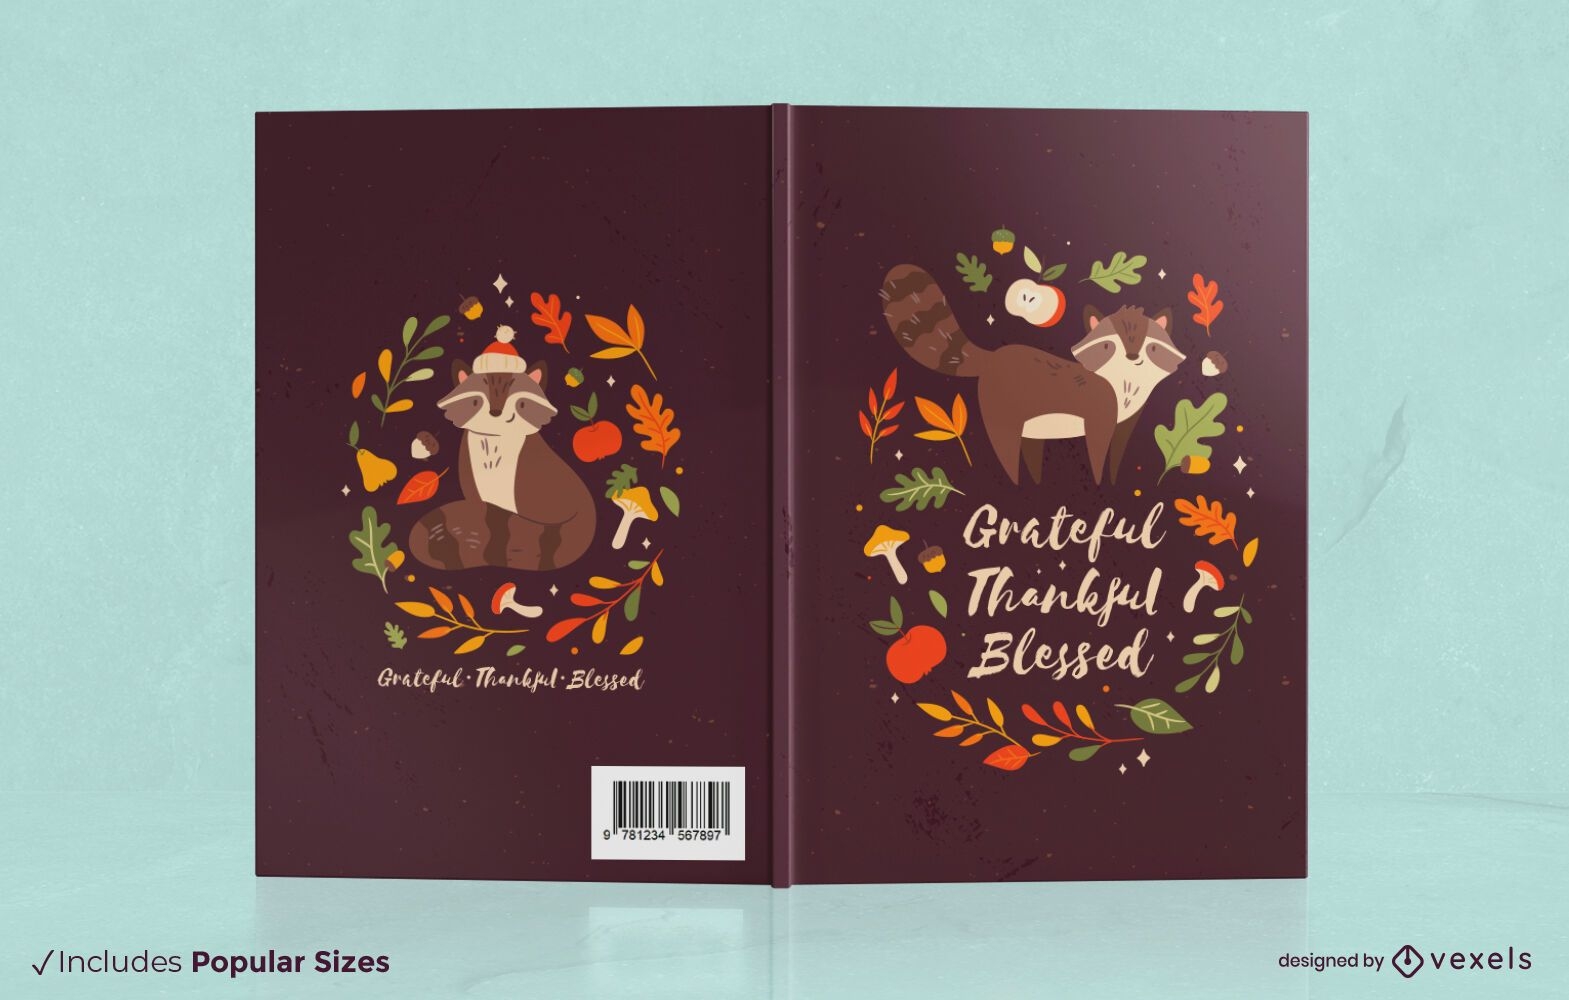 Design des Waschbären-Buchcovers für die Herbstsaison